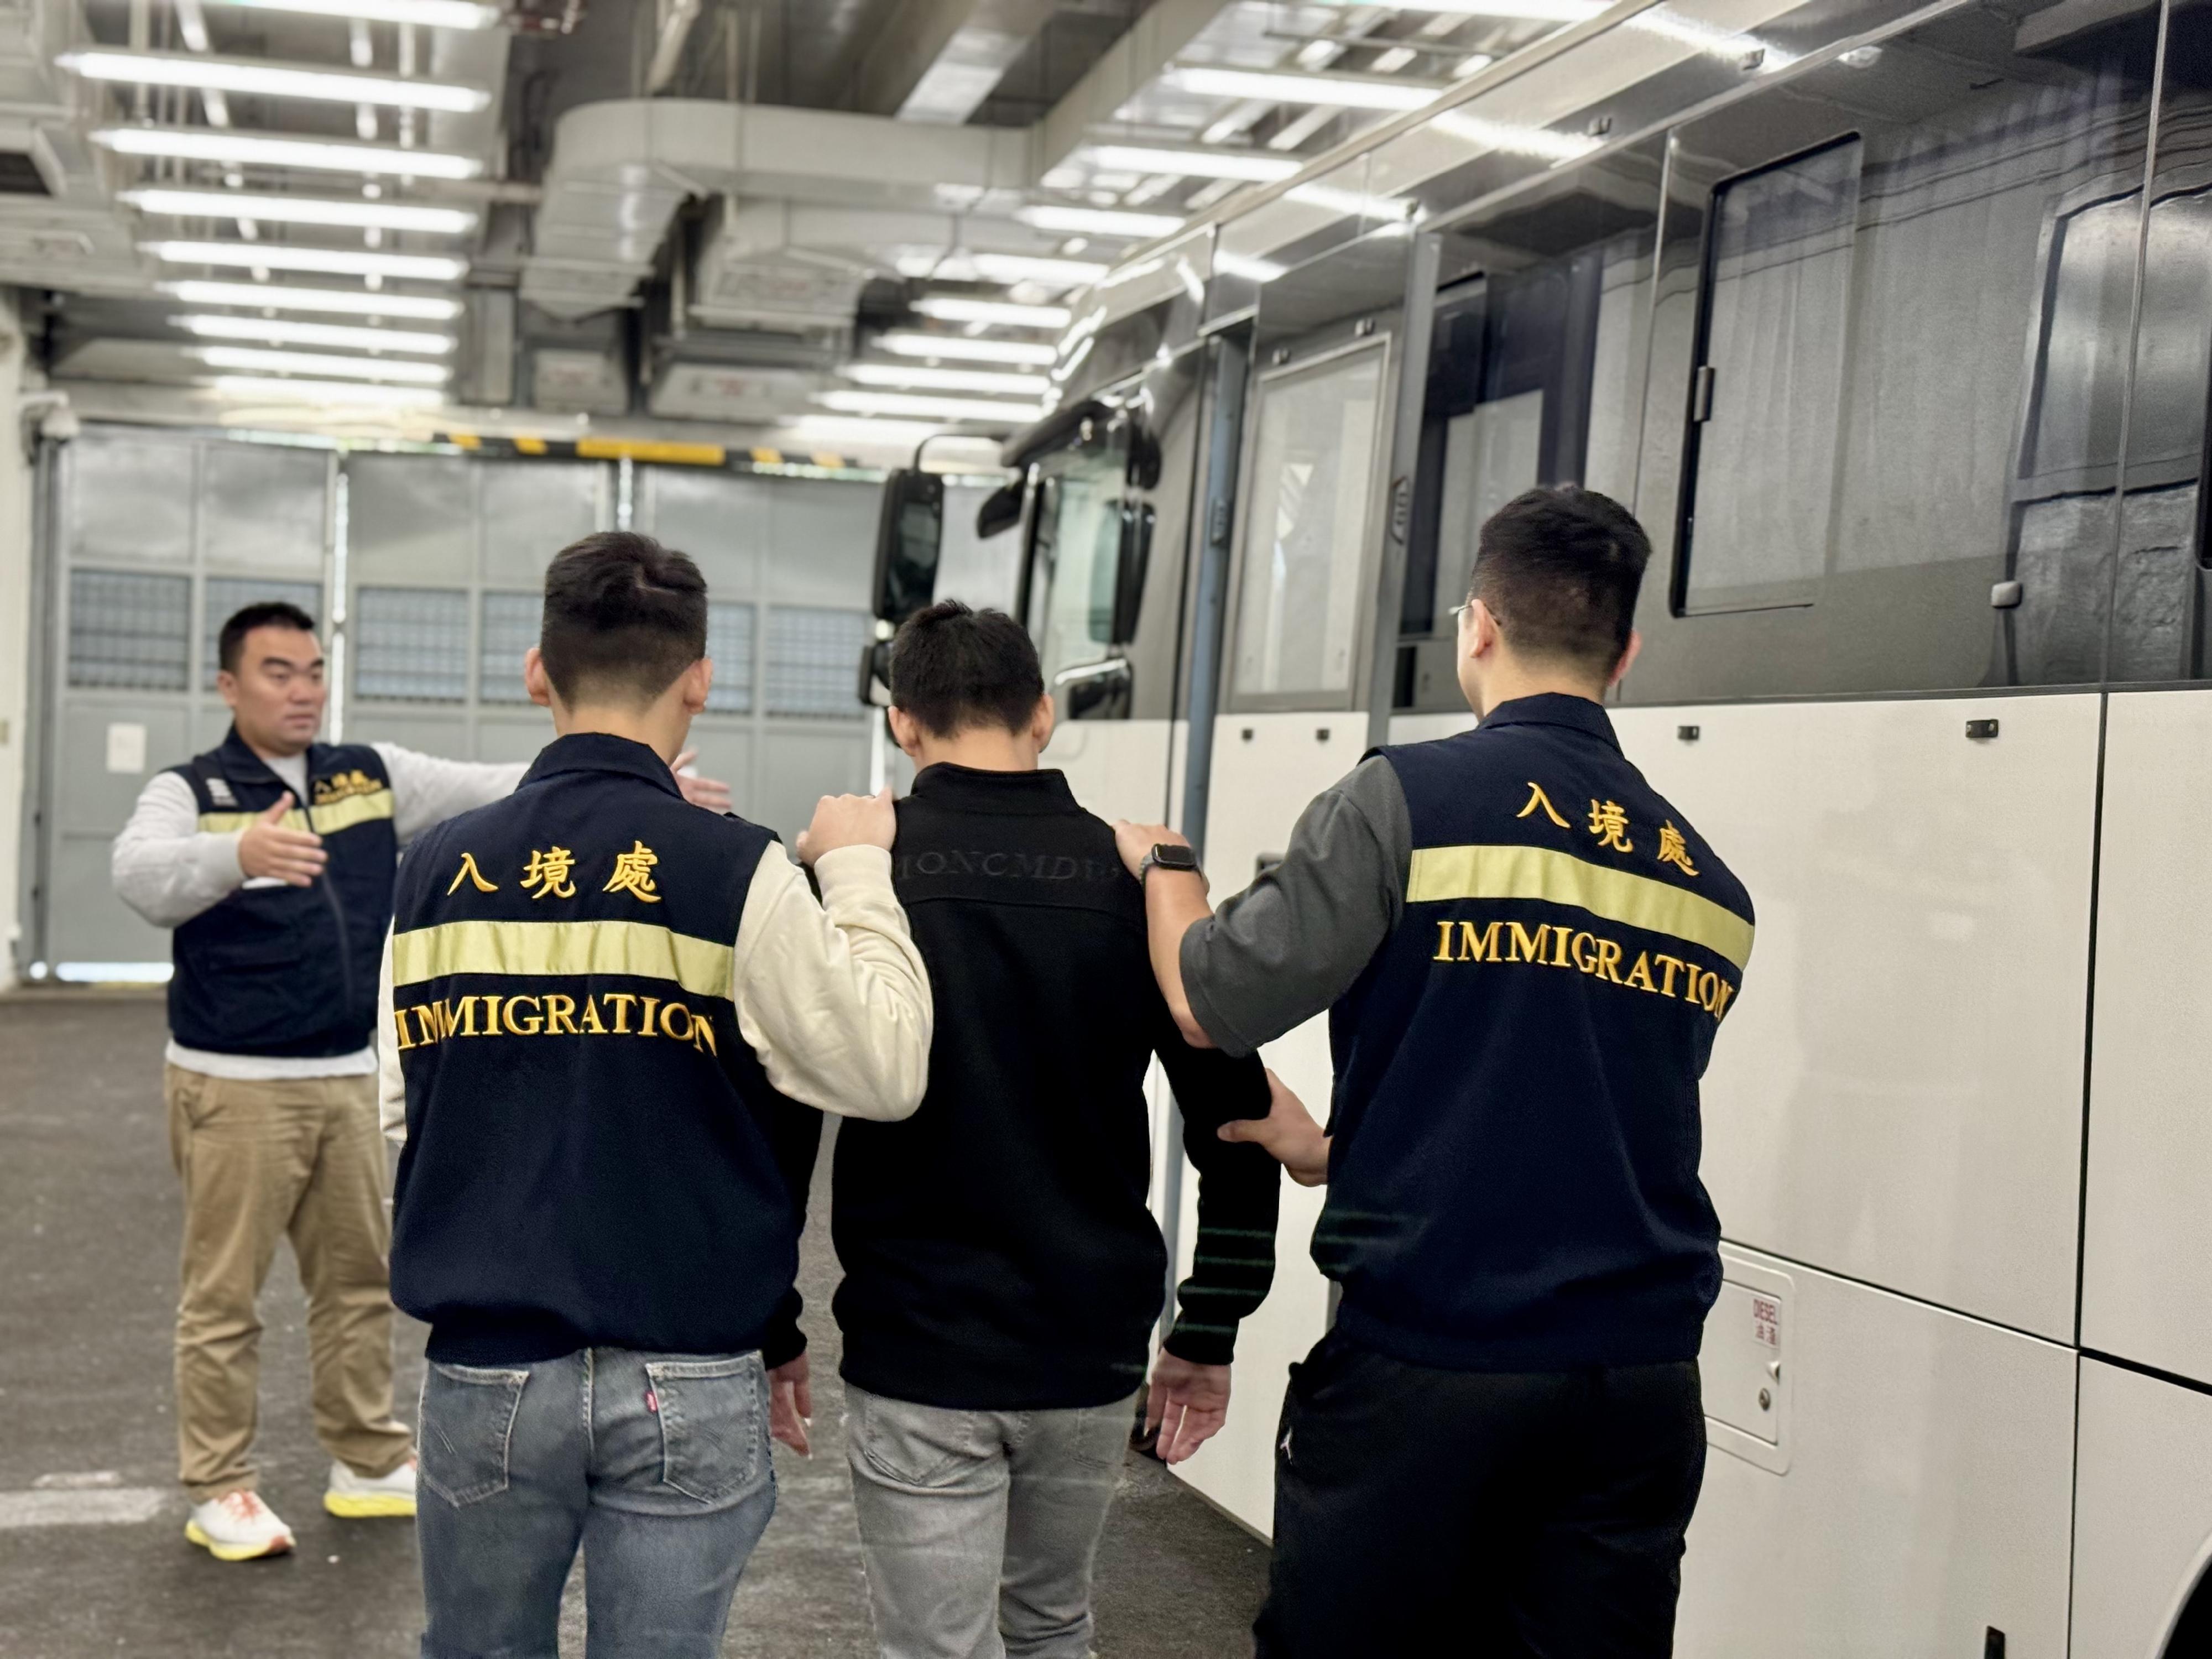 入境事務處（入境處）今日（十二月二十八日）執行遣送行動，將16名越南籍非法入境者遣返越南。圖示被遣返人士在入境處人員押送下離開羈押地點前往機場。
